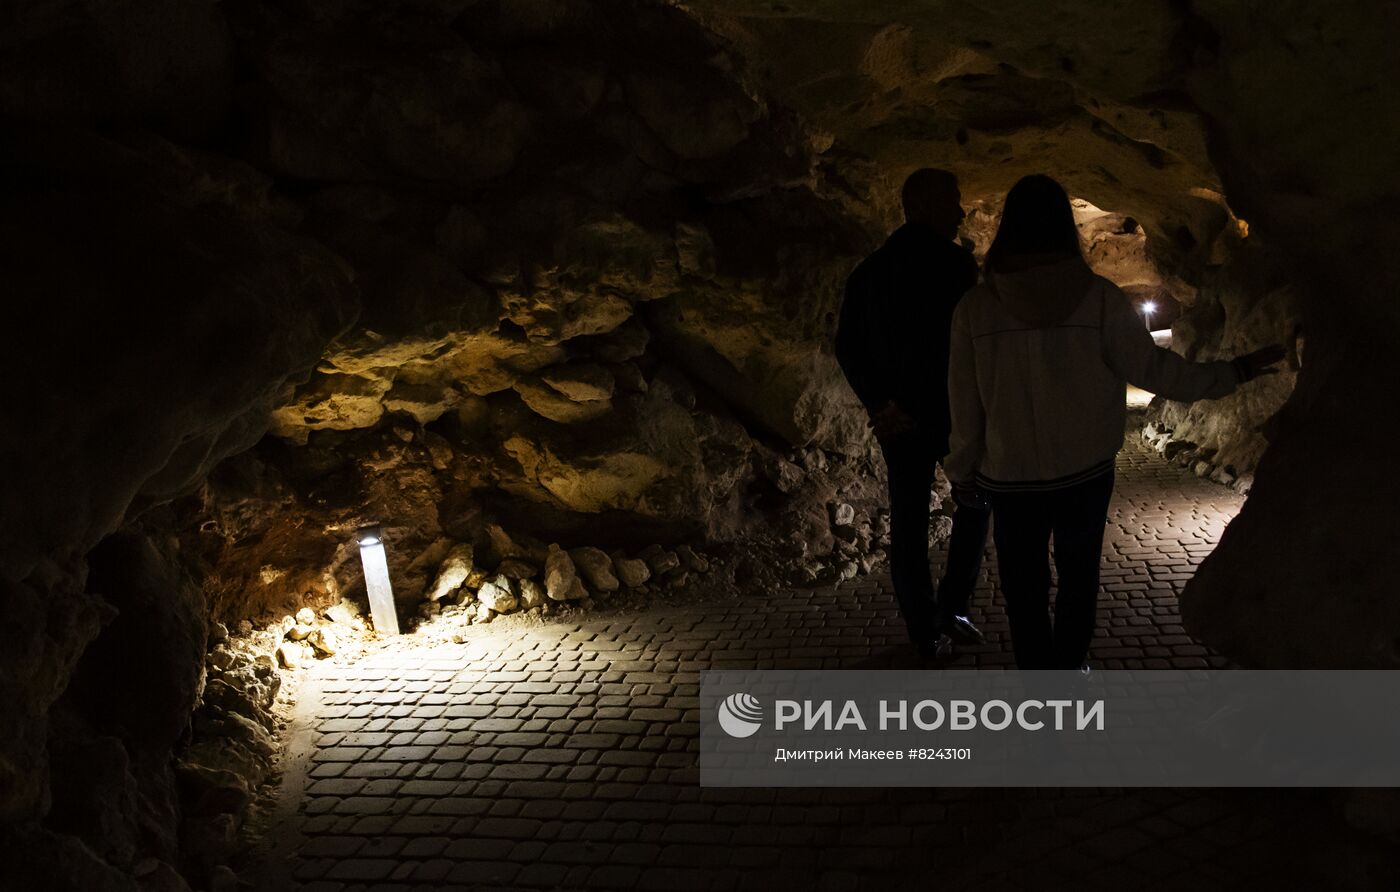 Пещера "Таврида" в Крыму